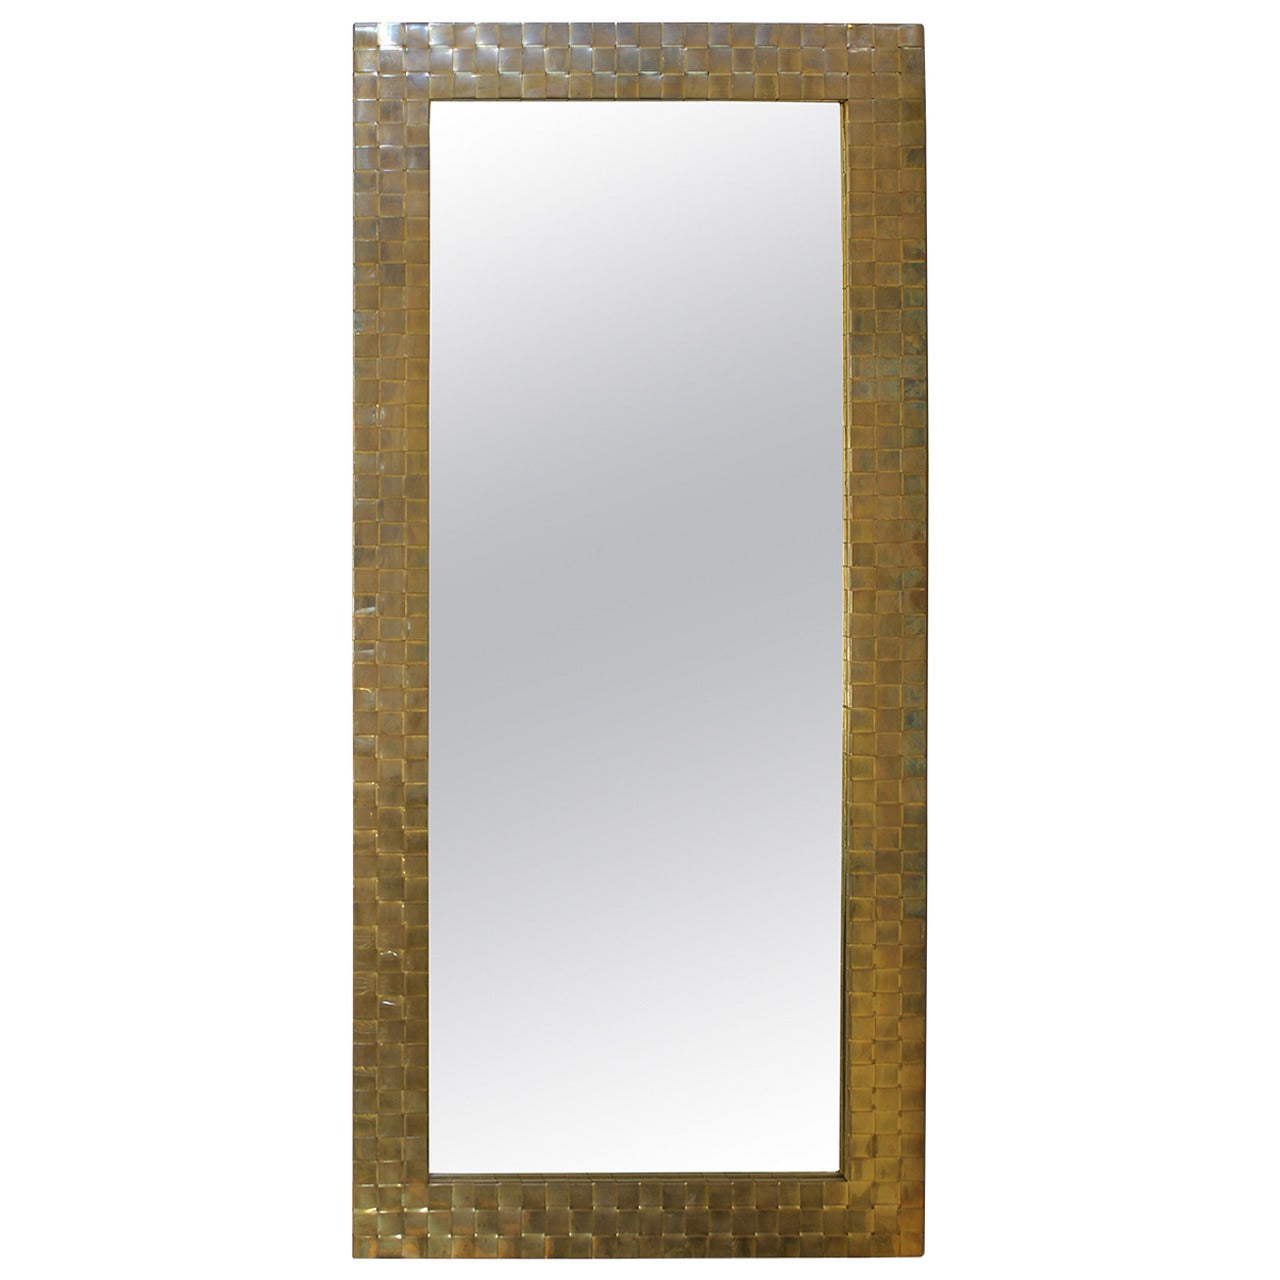 Stylish Mid-Century Brass Mirror